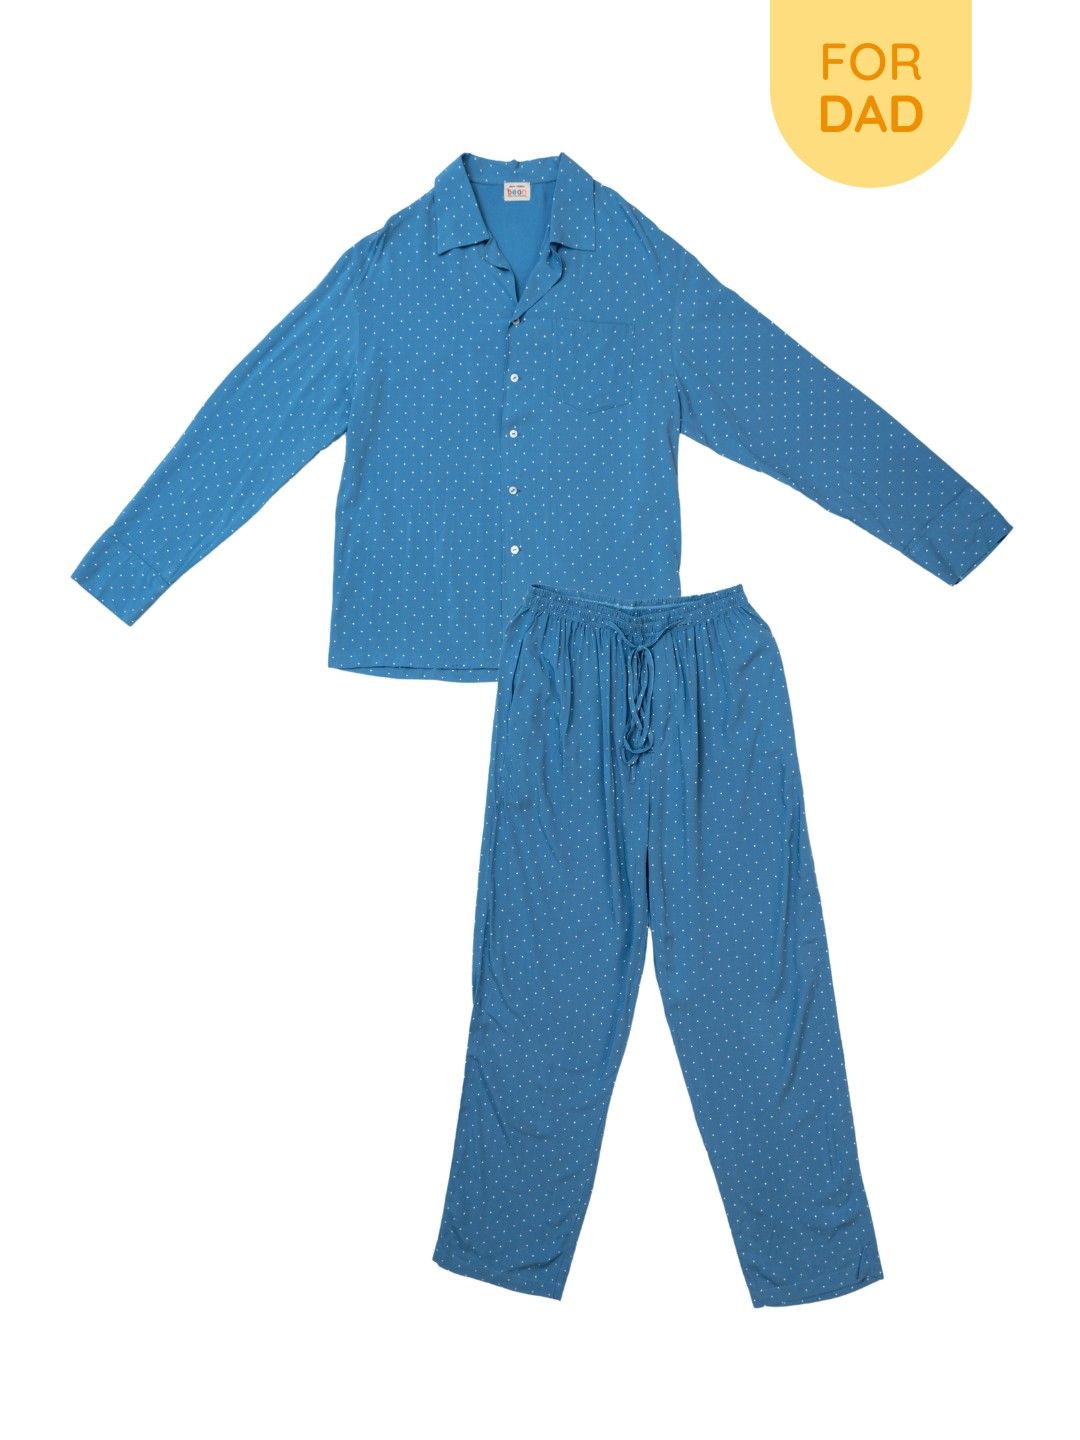 bean fashion Polka Dot Sleep Pajama Set for Dad (No Color- Image 1)